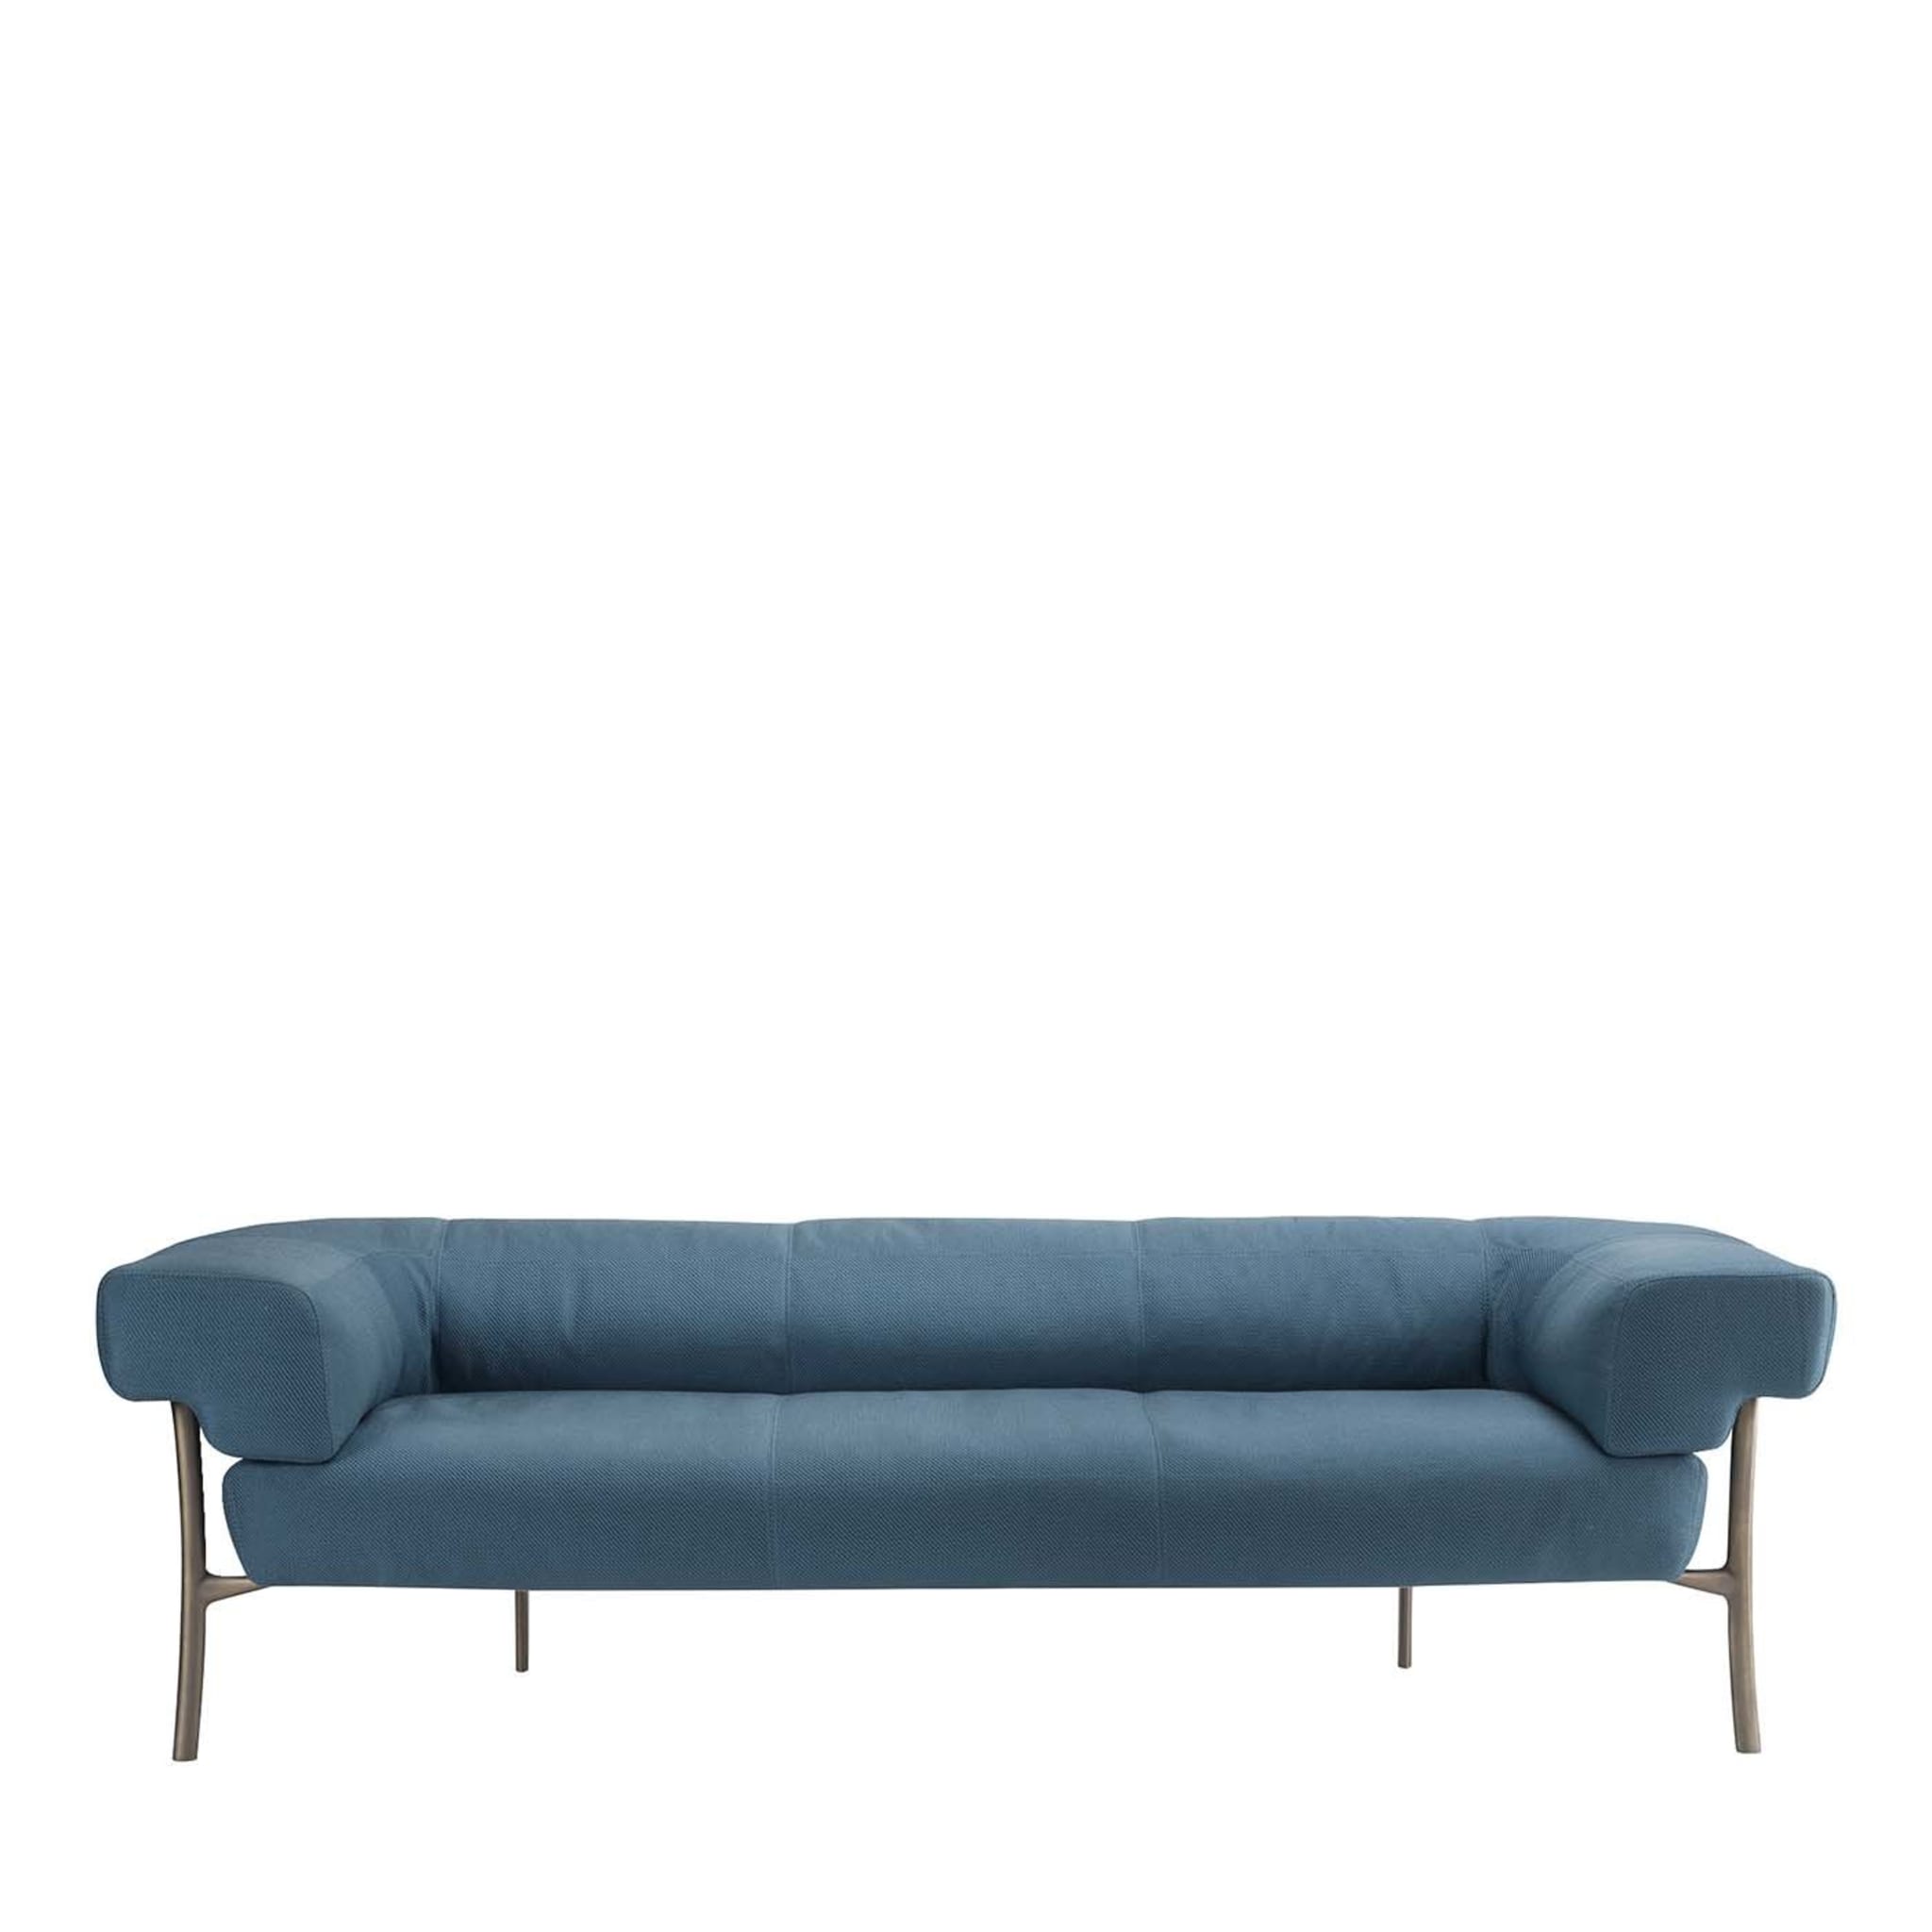 Katana 3-sitzer sofa by Paolo Rizzatto - Hauptansicht